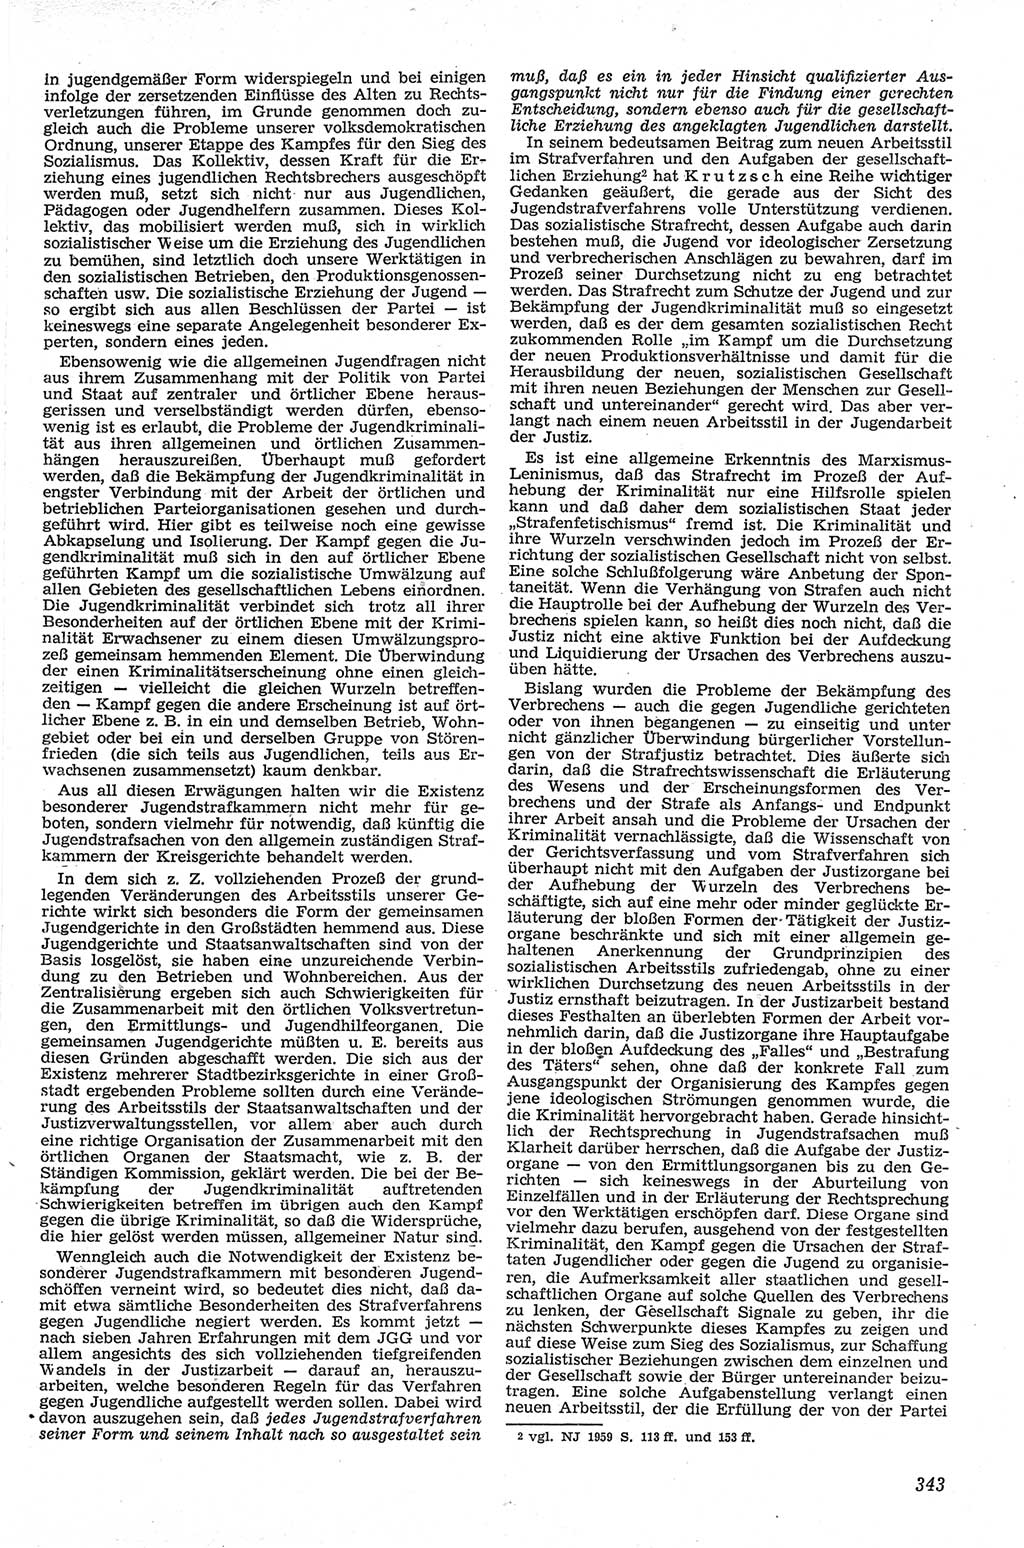 Neue Justiz (NJ), Zeitschrift für Recht und Rechtswissenschaft [Deutsche Demokratische Republik (DDR)], 13. Jahrgang 1959, Seite 343 (NJ DDR 1959, S. 343)